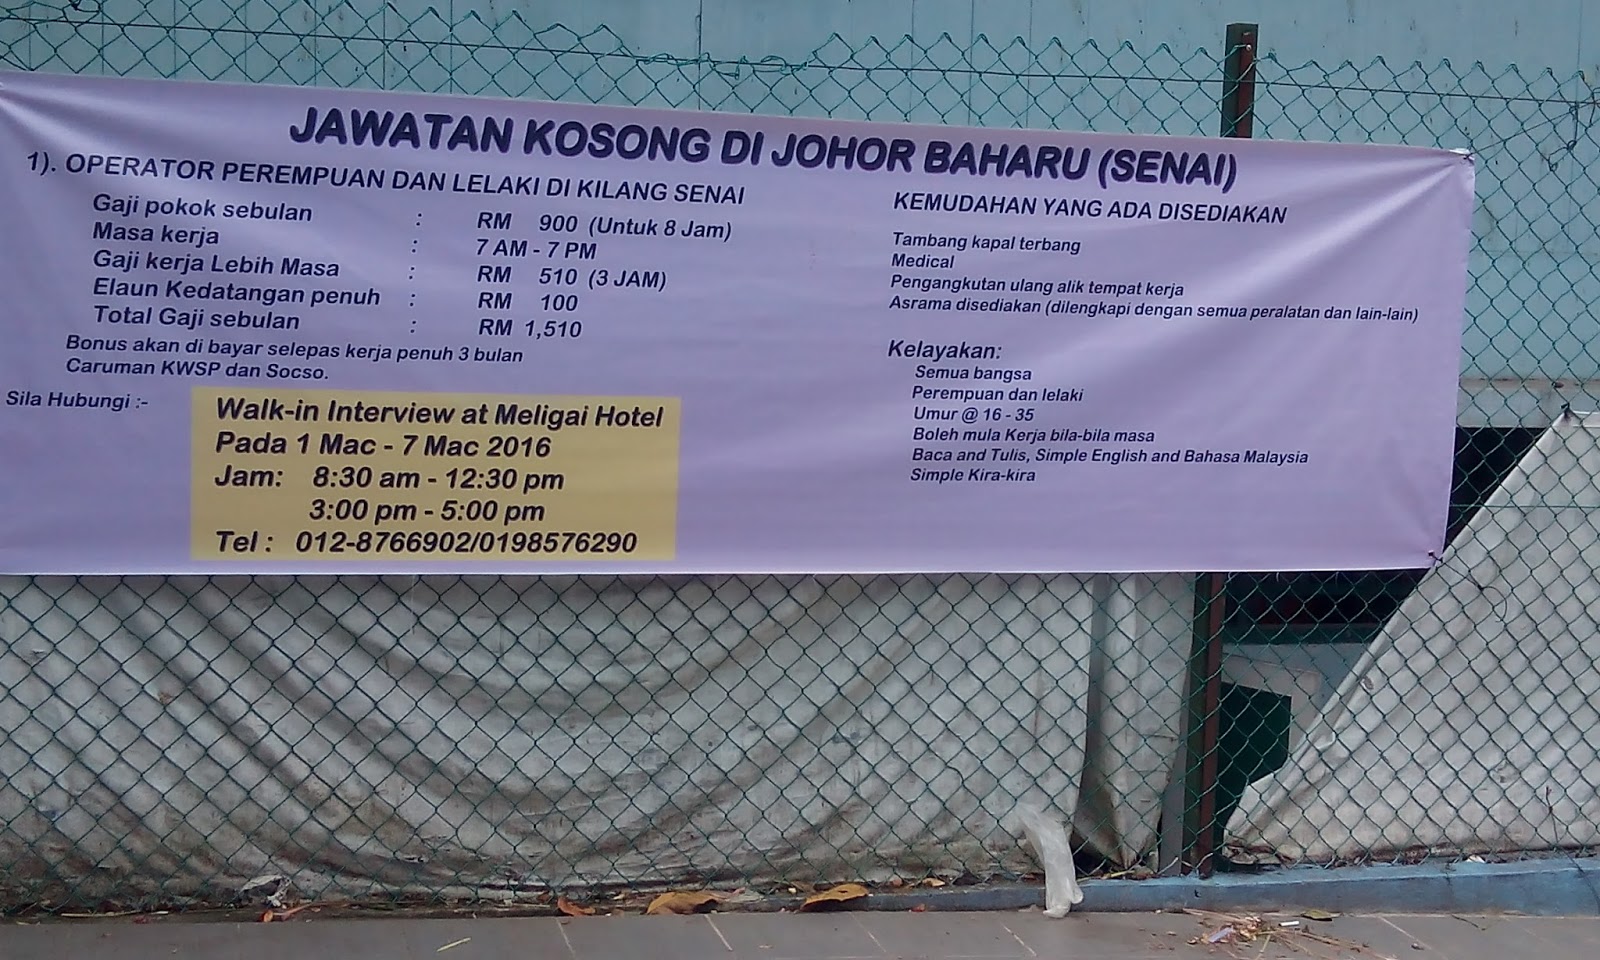 Senarai Jawatan Kosong Di Johor Bahru 2016 (Senai)